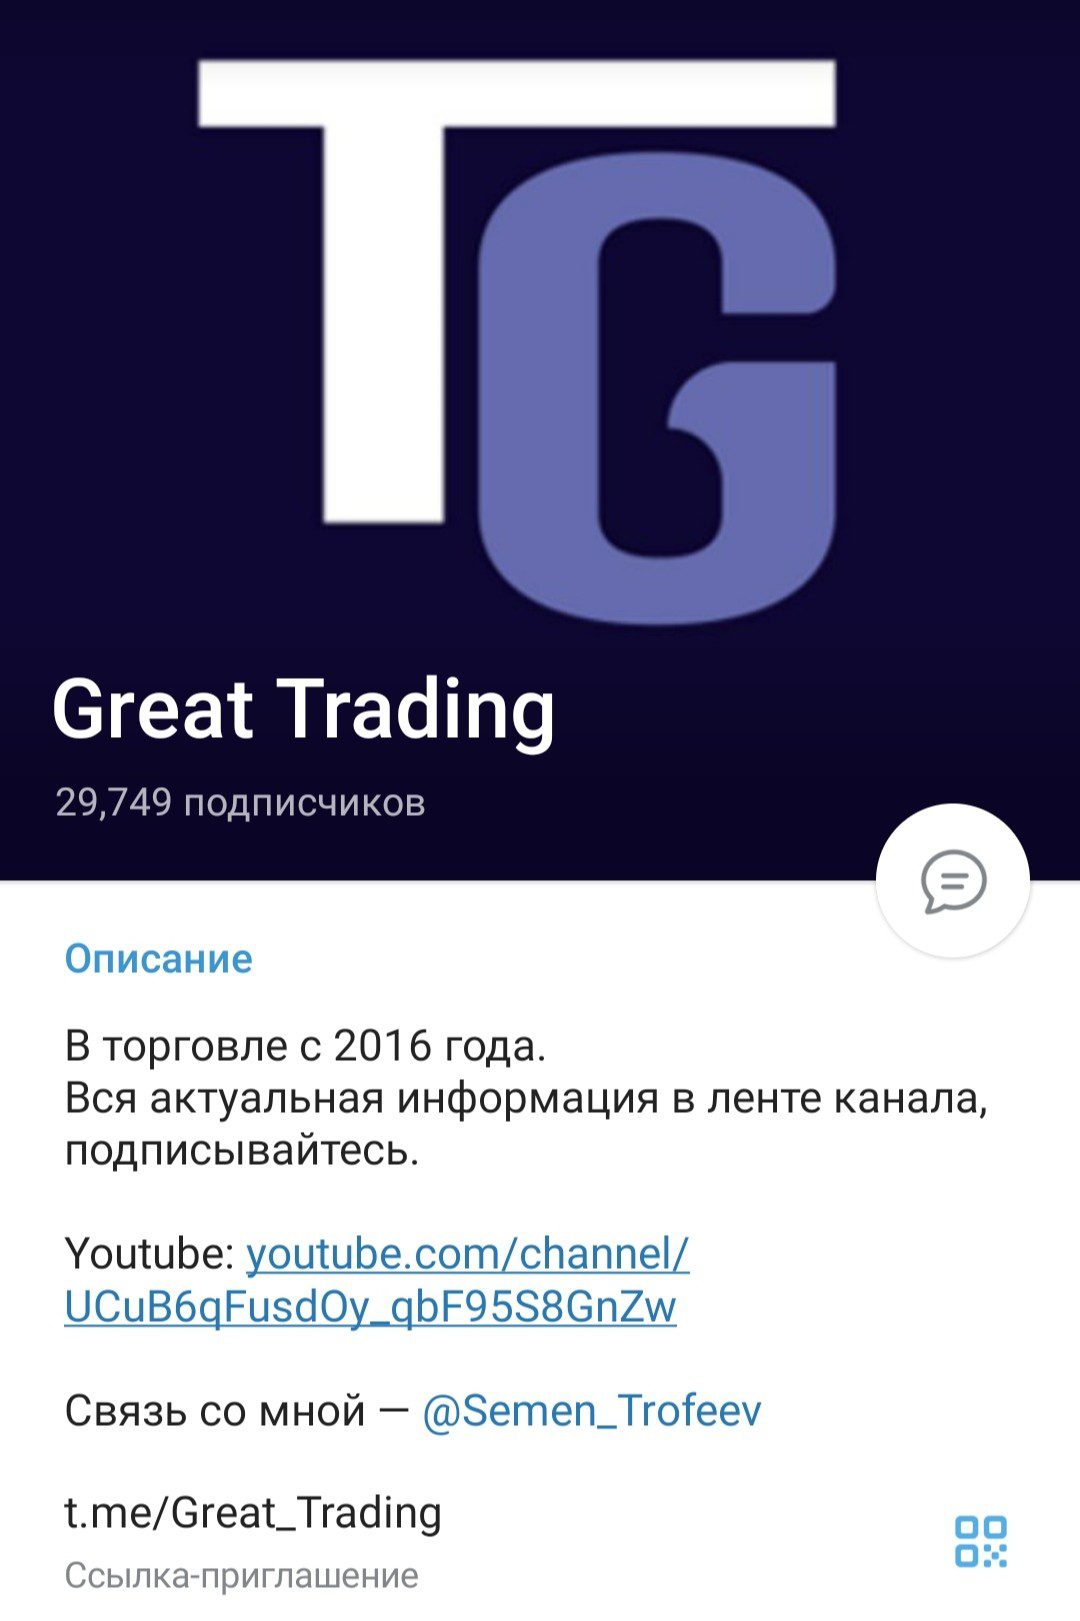 Телеграм Great Trading обзор